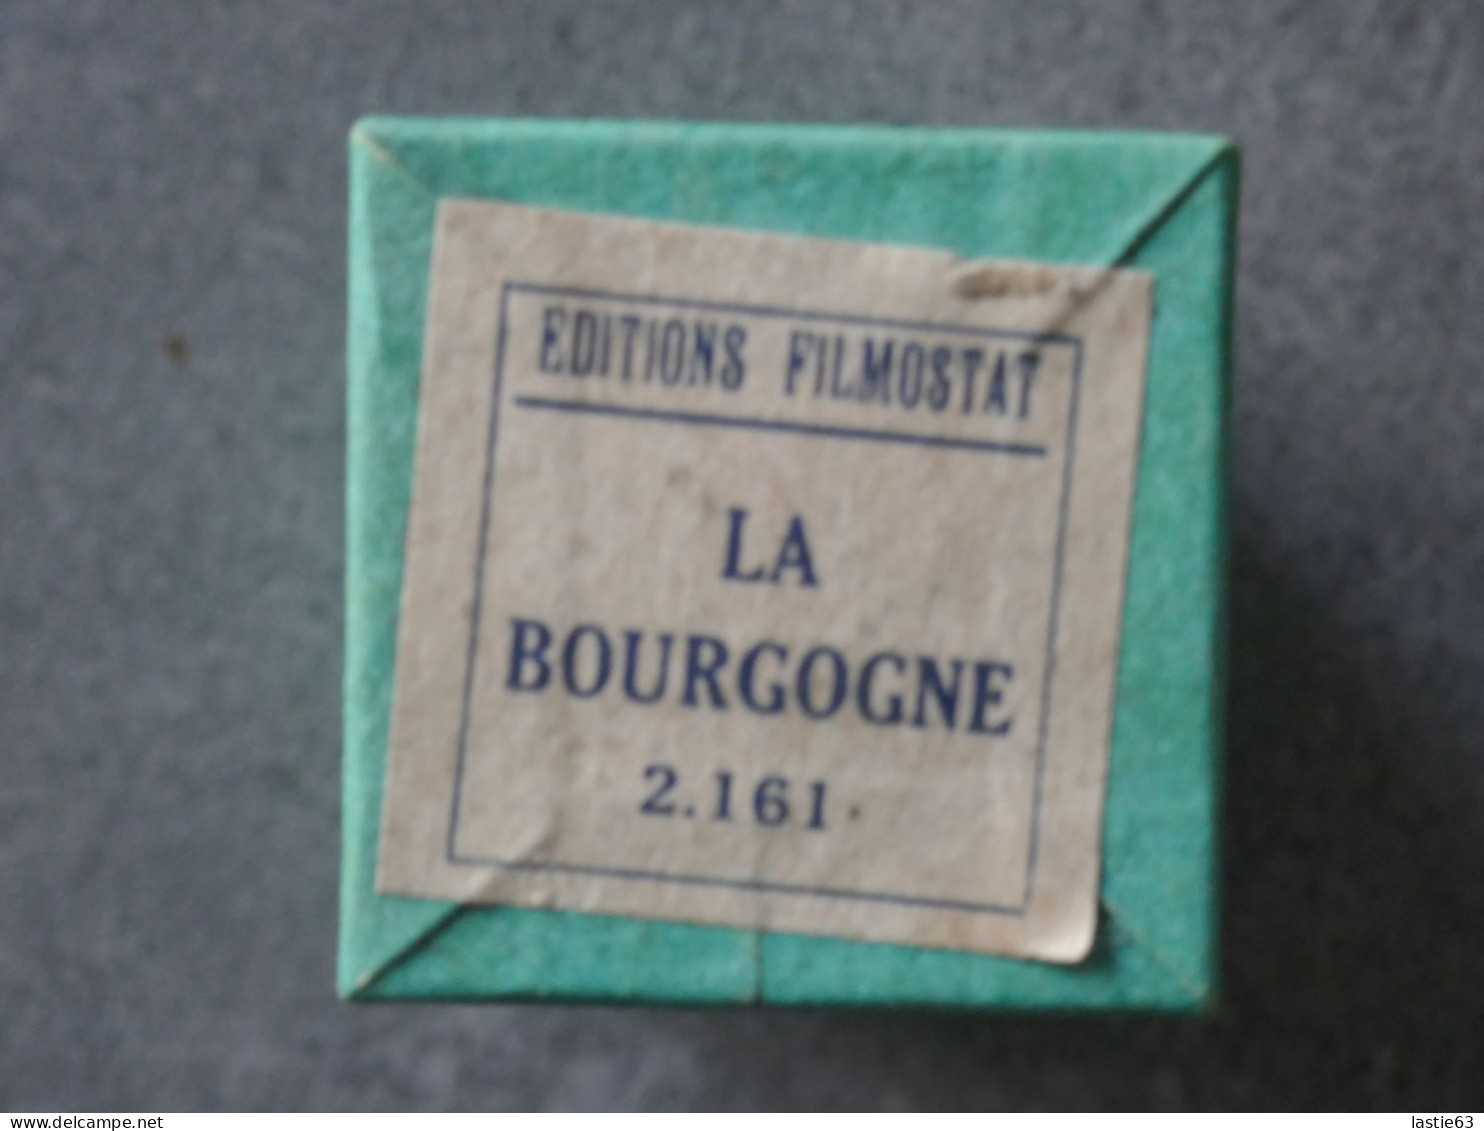 Film Fixe      LA  BOURGOGNE   Filmostat  2.161 - Pellicole Cinematografiche: 35mm-16mm-9,5+8+S8mm